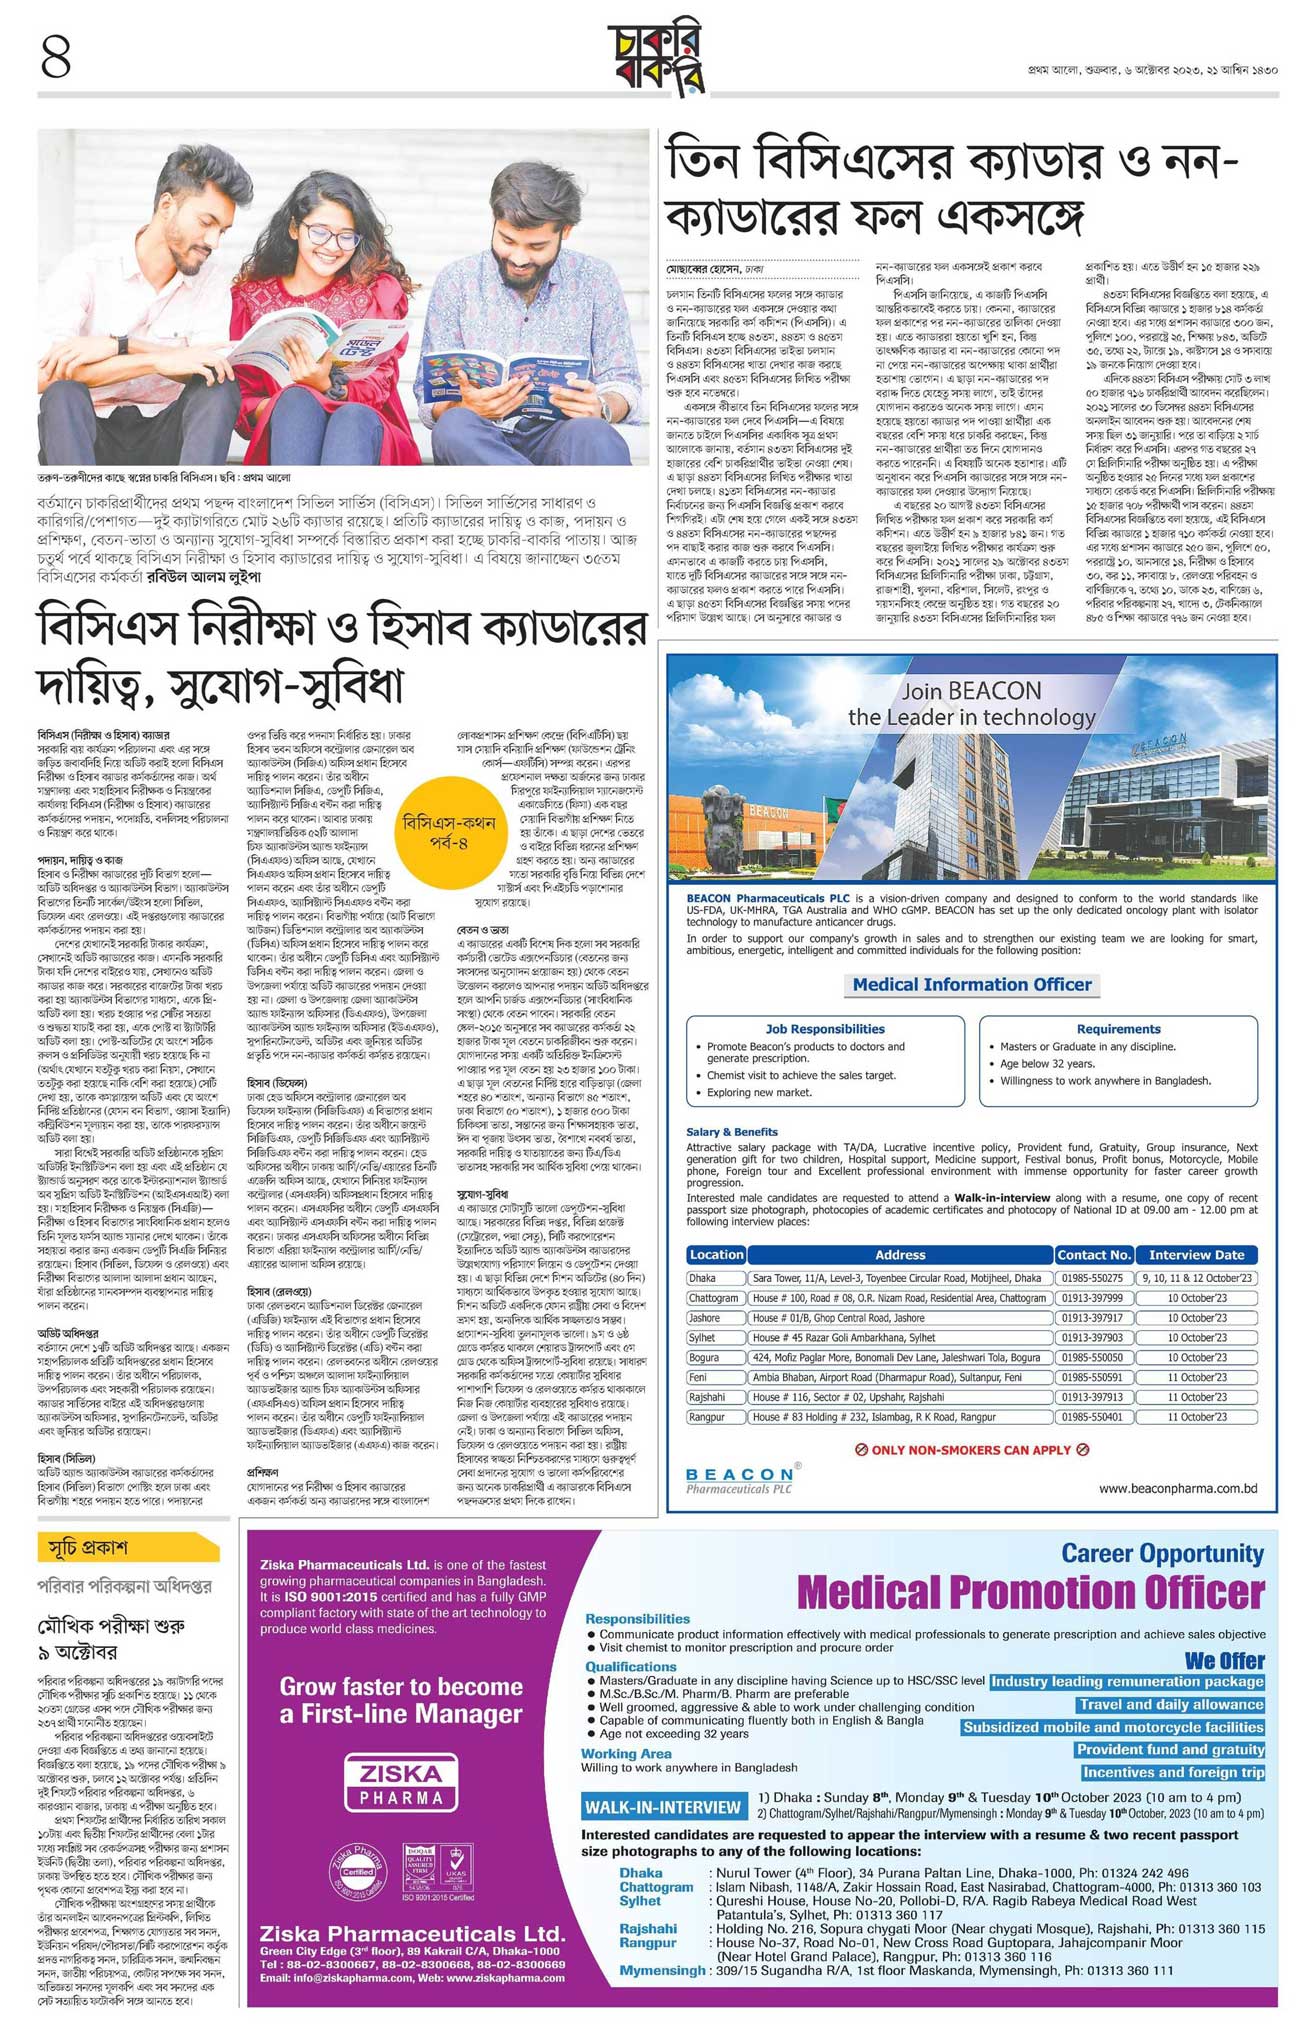 প্রথম আলো চাকরির খবর ০৬ অক্টোবর ২০২৩ - prothom alo job circular 06 october 2023 - প্রথম আলো চাকরি বাকরি ০৬ অক্টোবর২০২৩ - Prothom Alo Chakri Bakri 06-10-2023